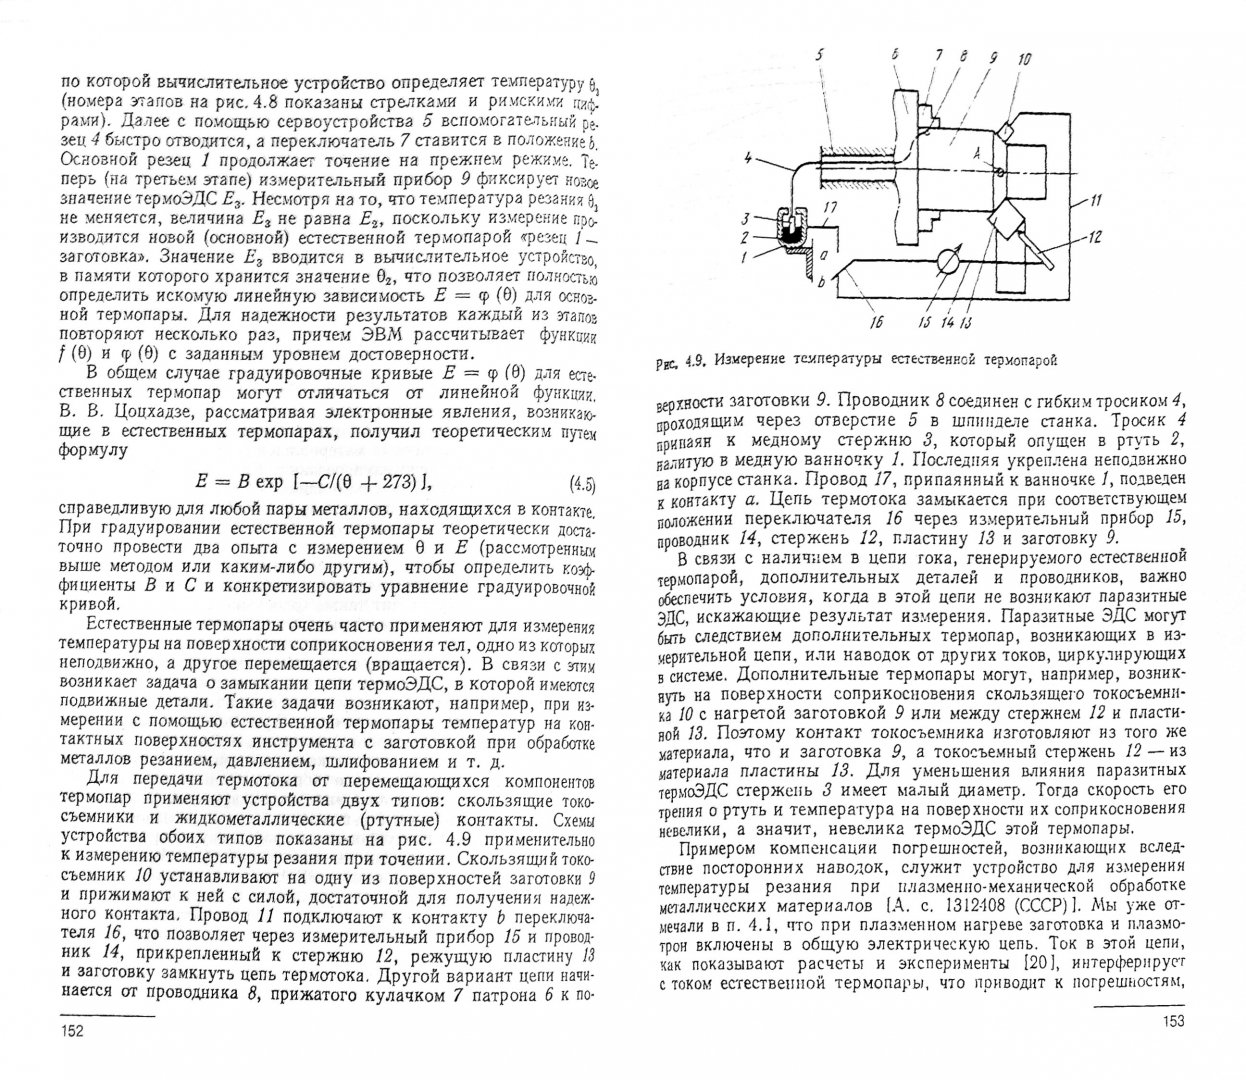 Иллюстрация 1 из 5 для Тепловые процессы в технологических системах. Учебник - Резников, Резников | Лабиринт - книги. Источник: Лабиринт